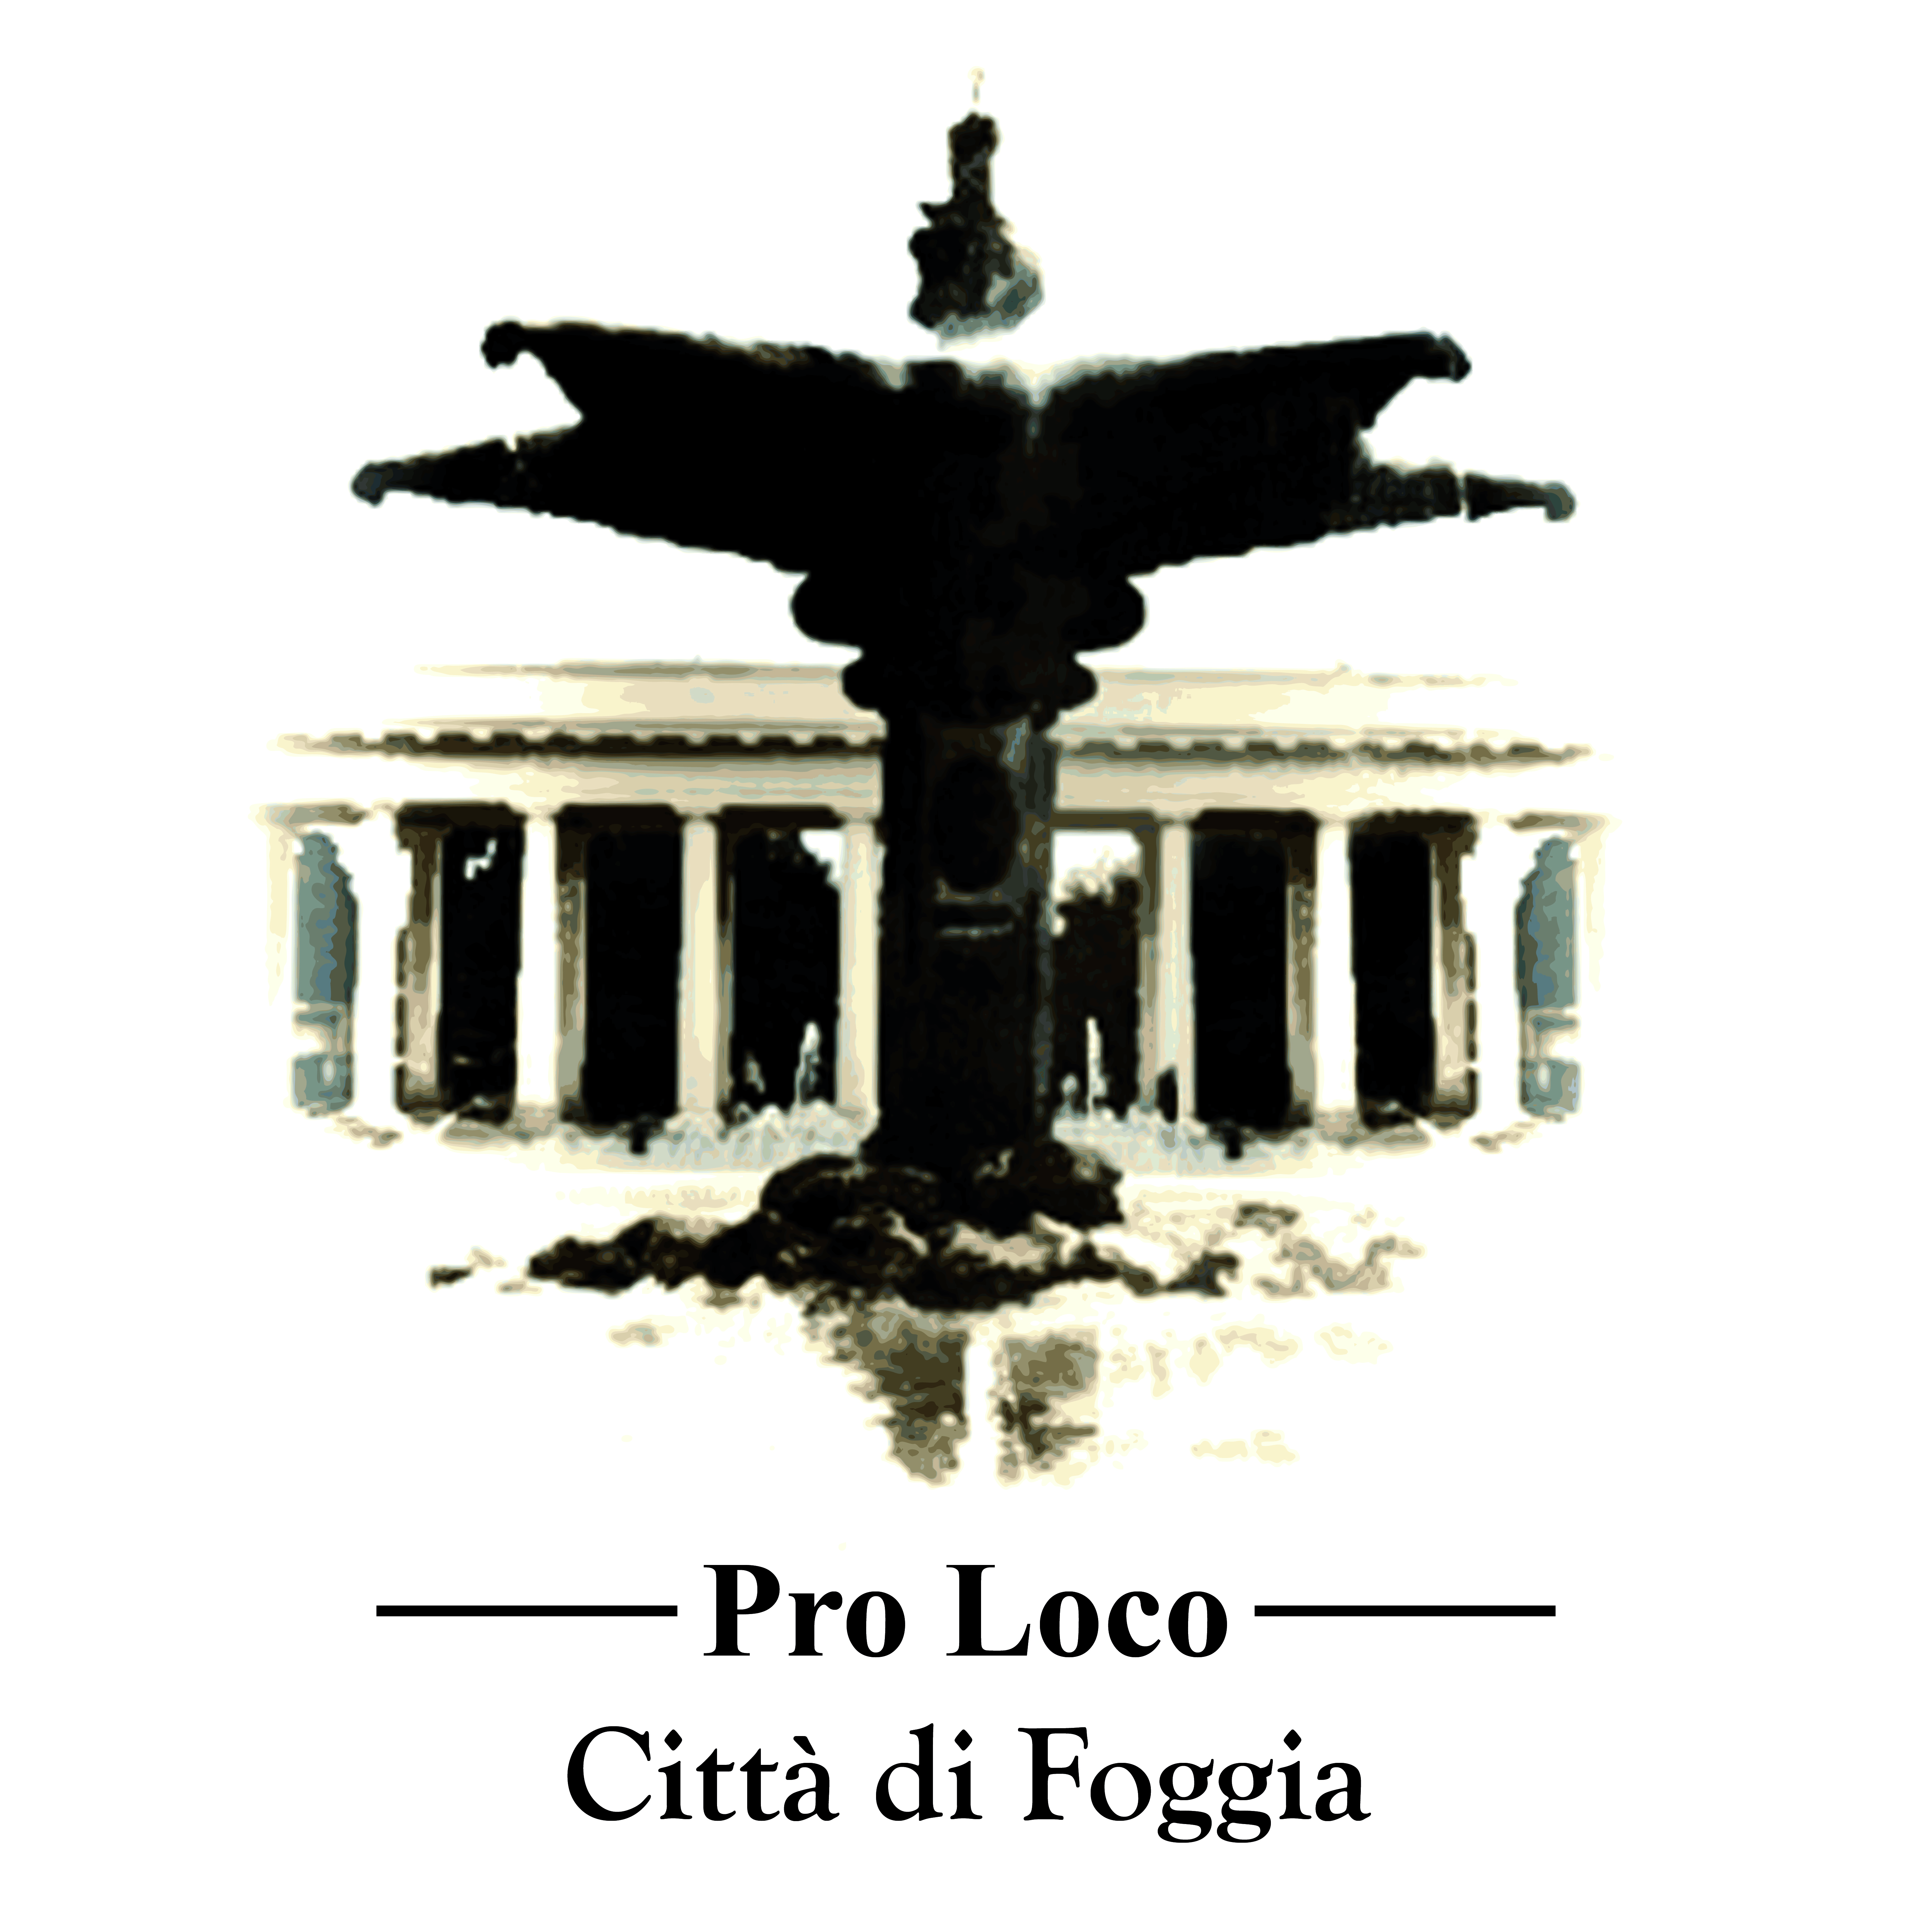 La “Pro Loco – Città di Foggia” tramite un comunicato chiarisce la sua “posizione”